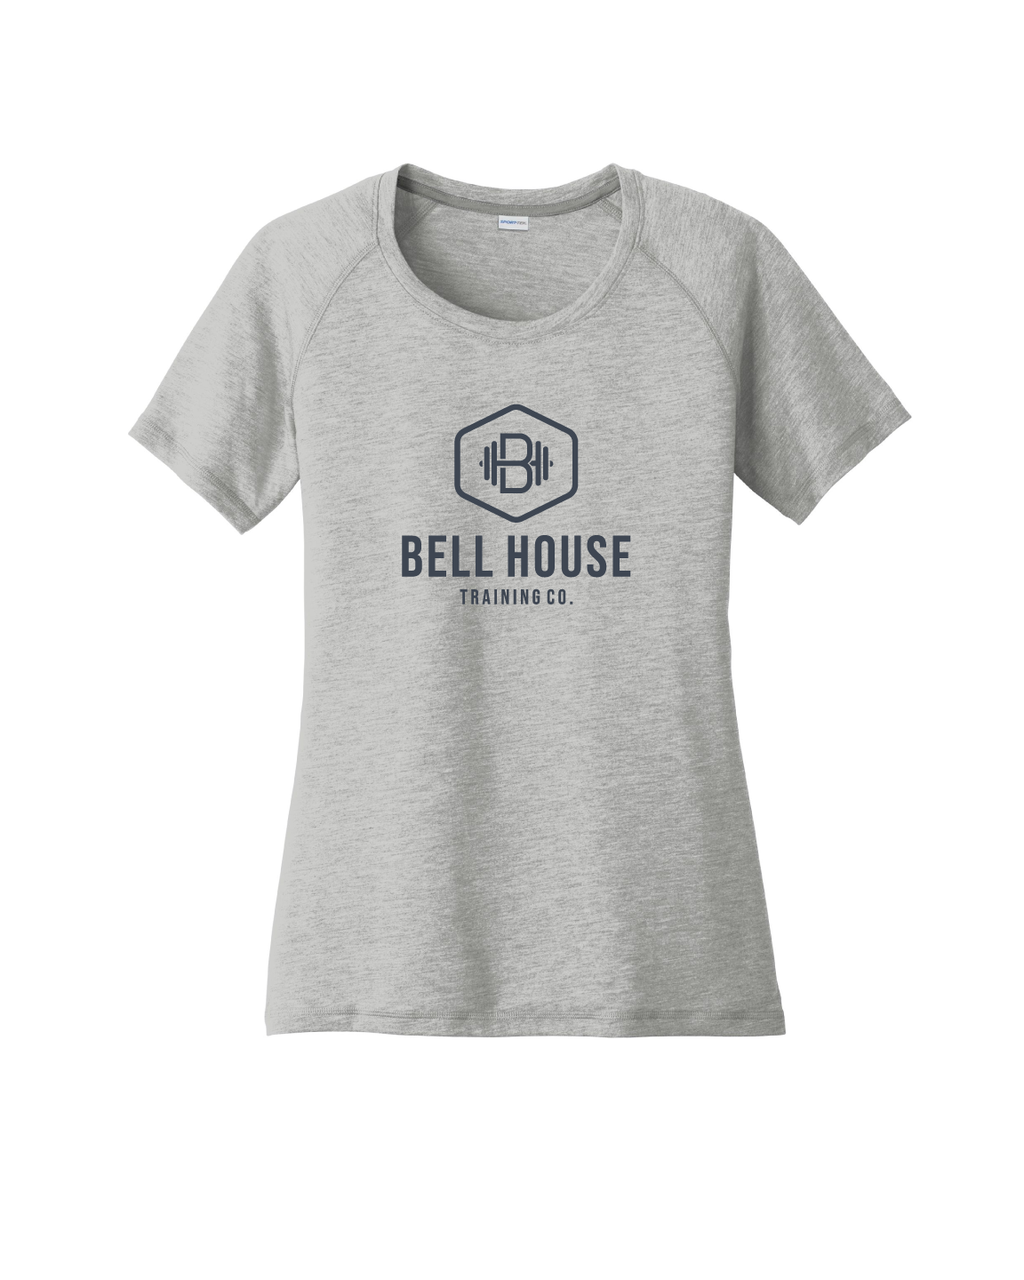 Bell House - Women's Moisture Wicking T-Shirt